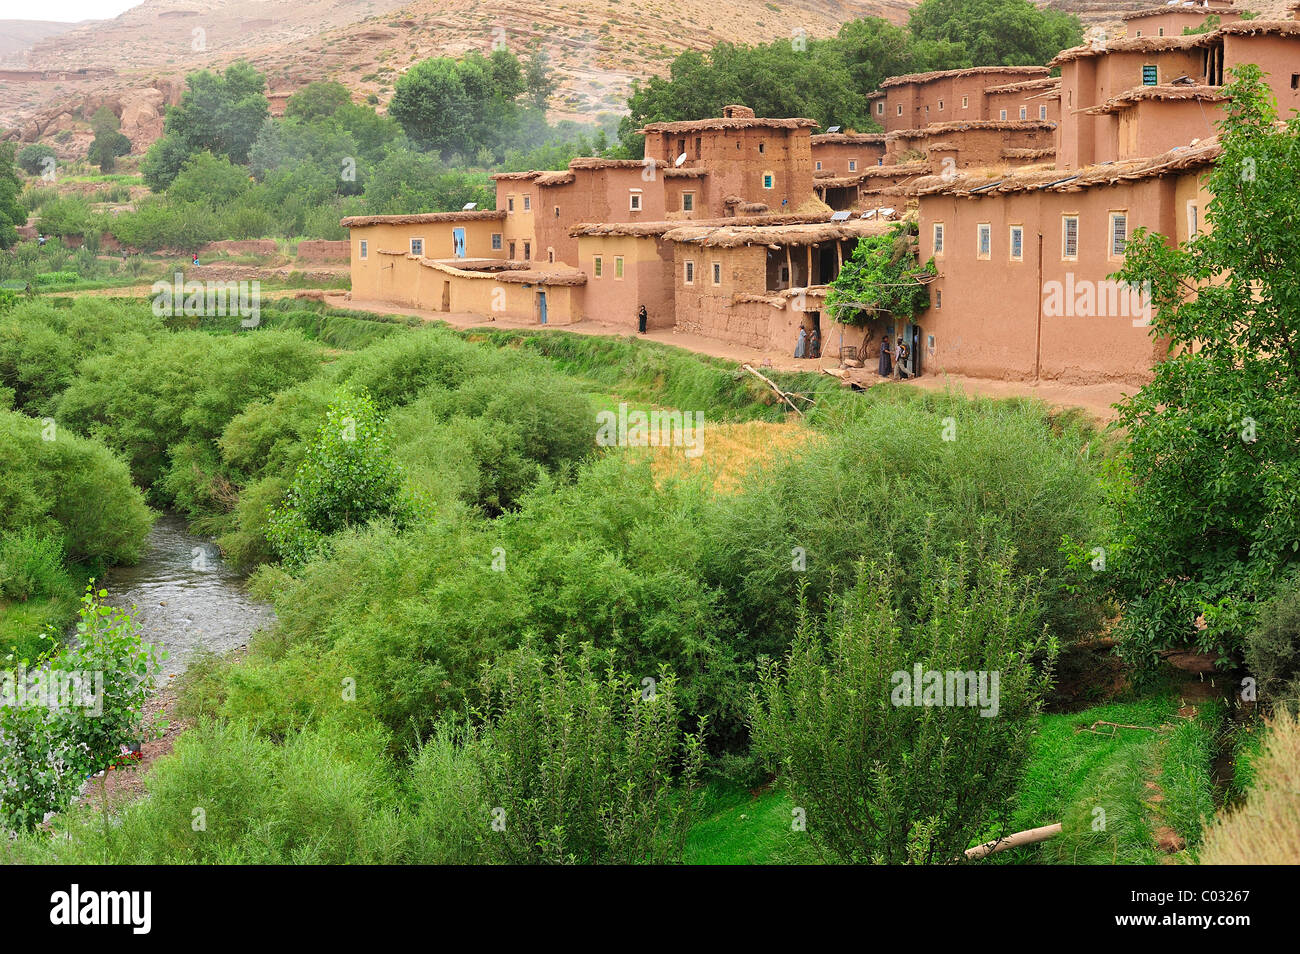 Petit village berbère, avec des maisons en torchis sur une rivière avec une végétation luxuriante, Kelaa M'gouna, Haut Atlas, Maroc, Afrique Banque D'Images